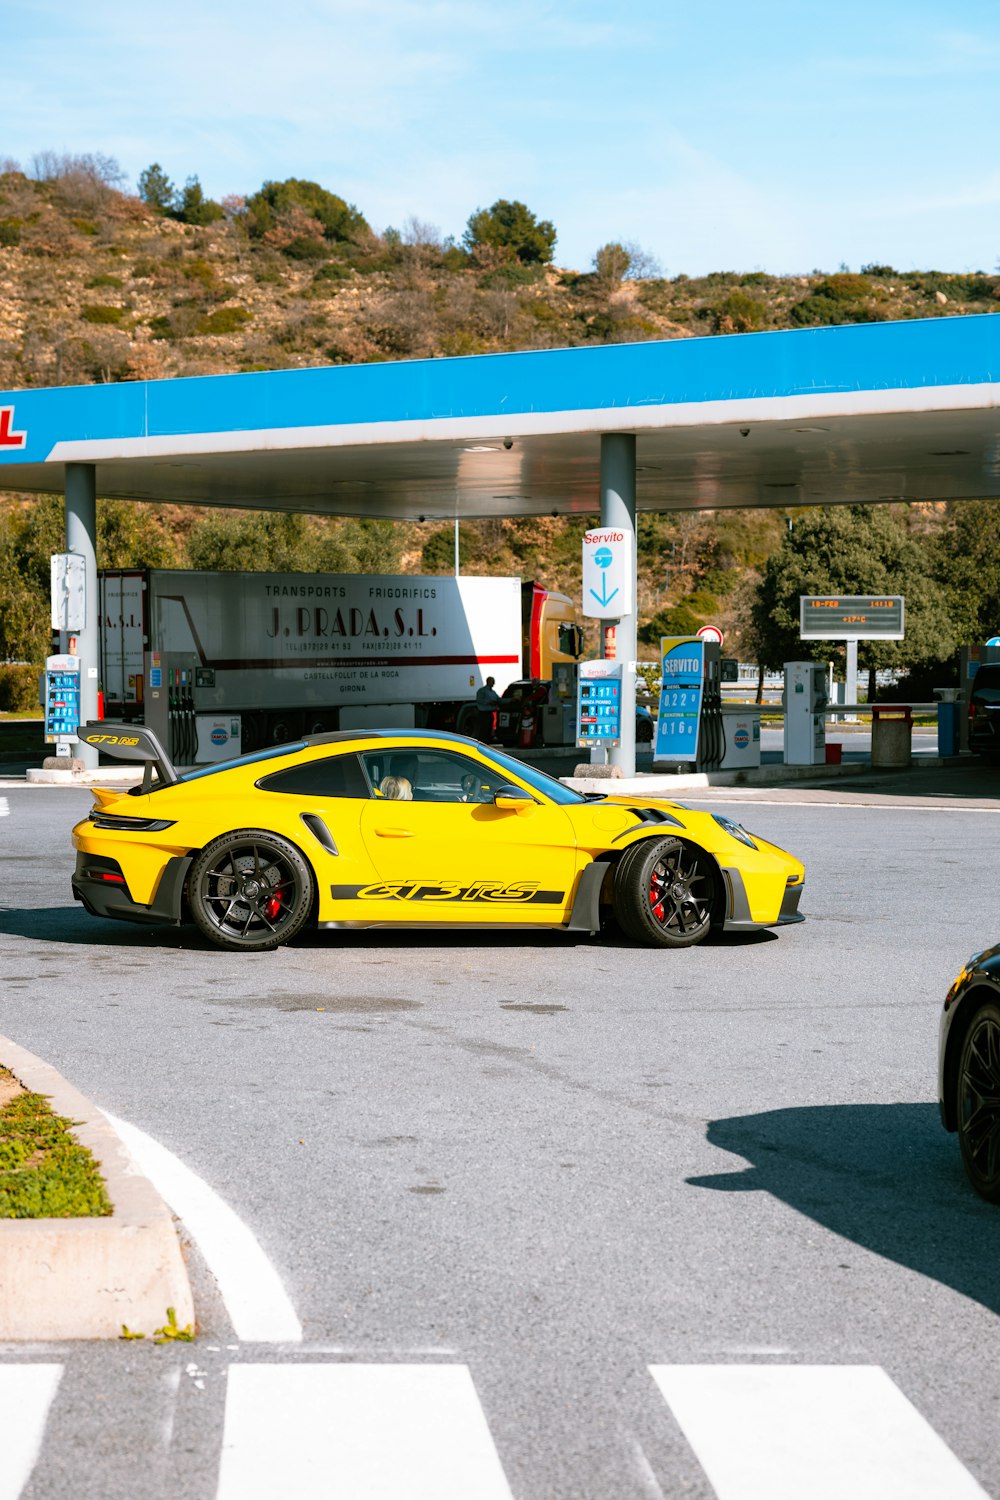 Ein gelber Sportwagen an einer Tankstelle